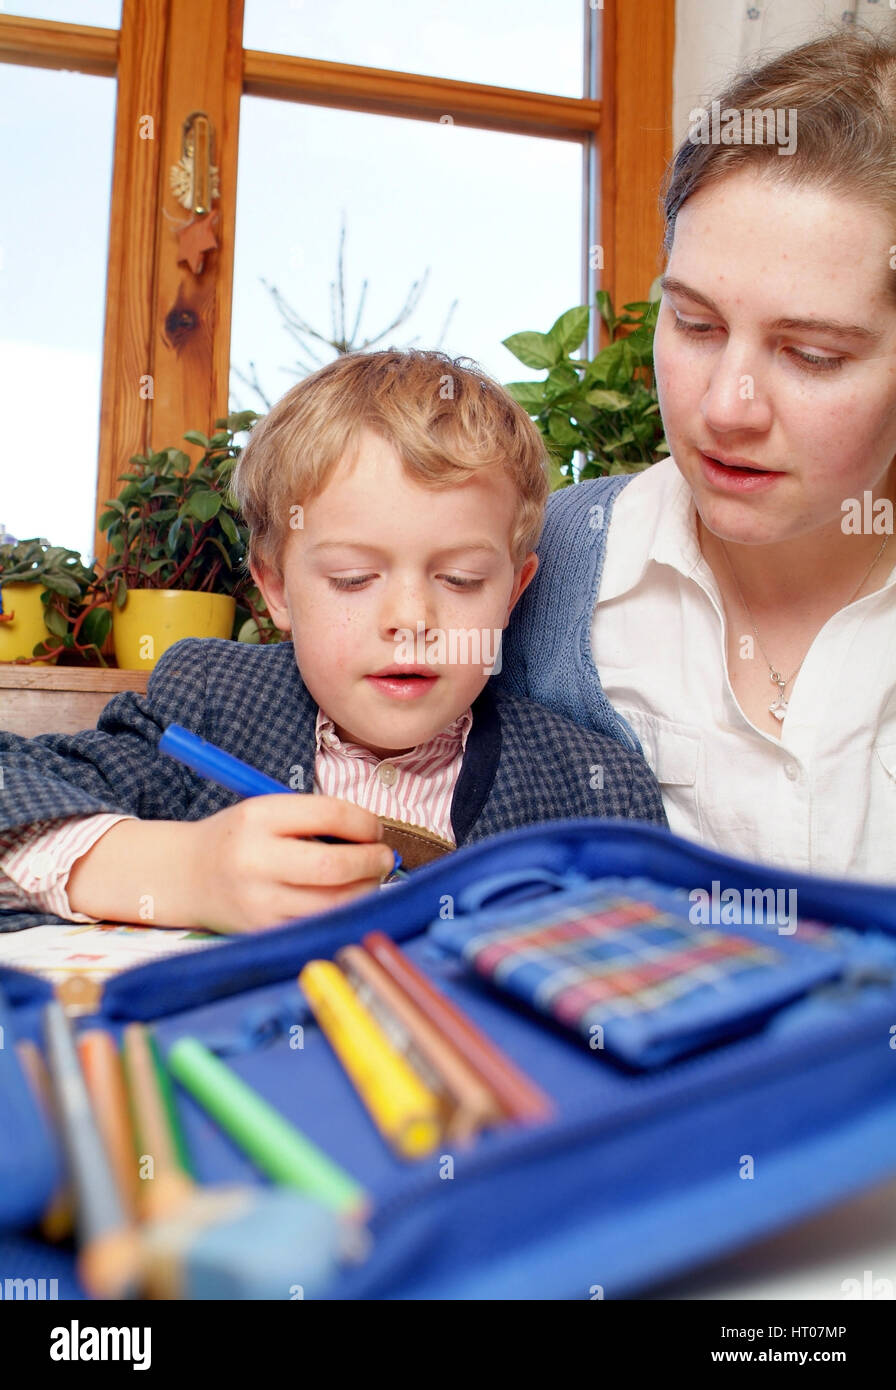 Mutter hilft Schuljungen bei Hausaufgabe - mother helps schoolboy with homework Stock Photo